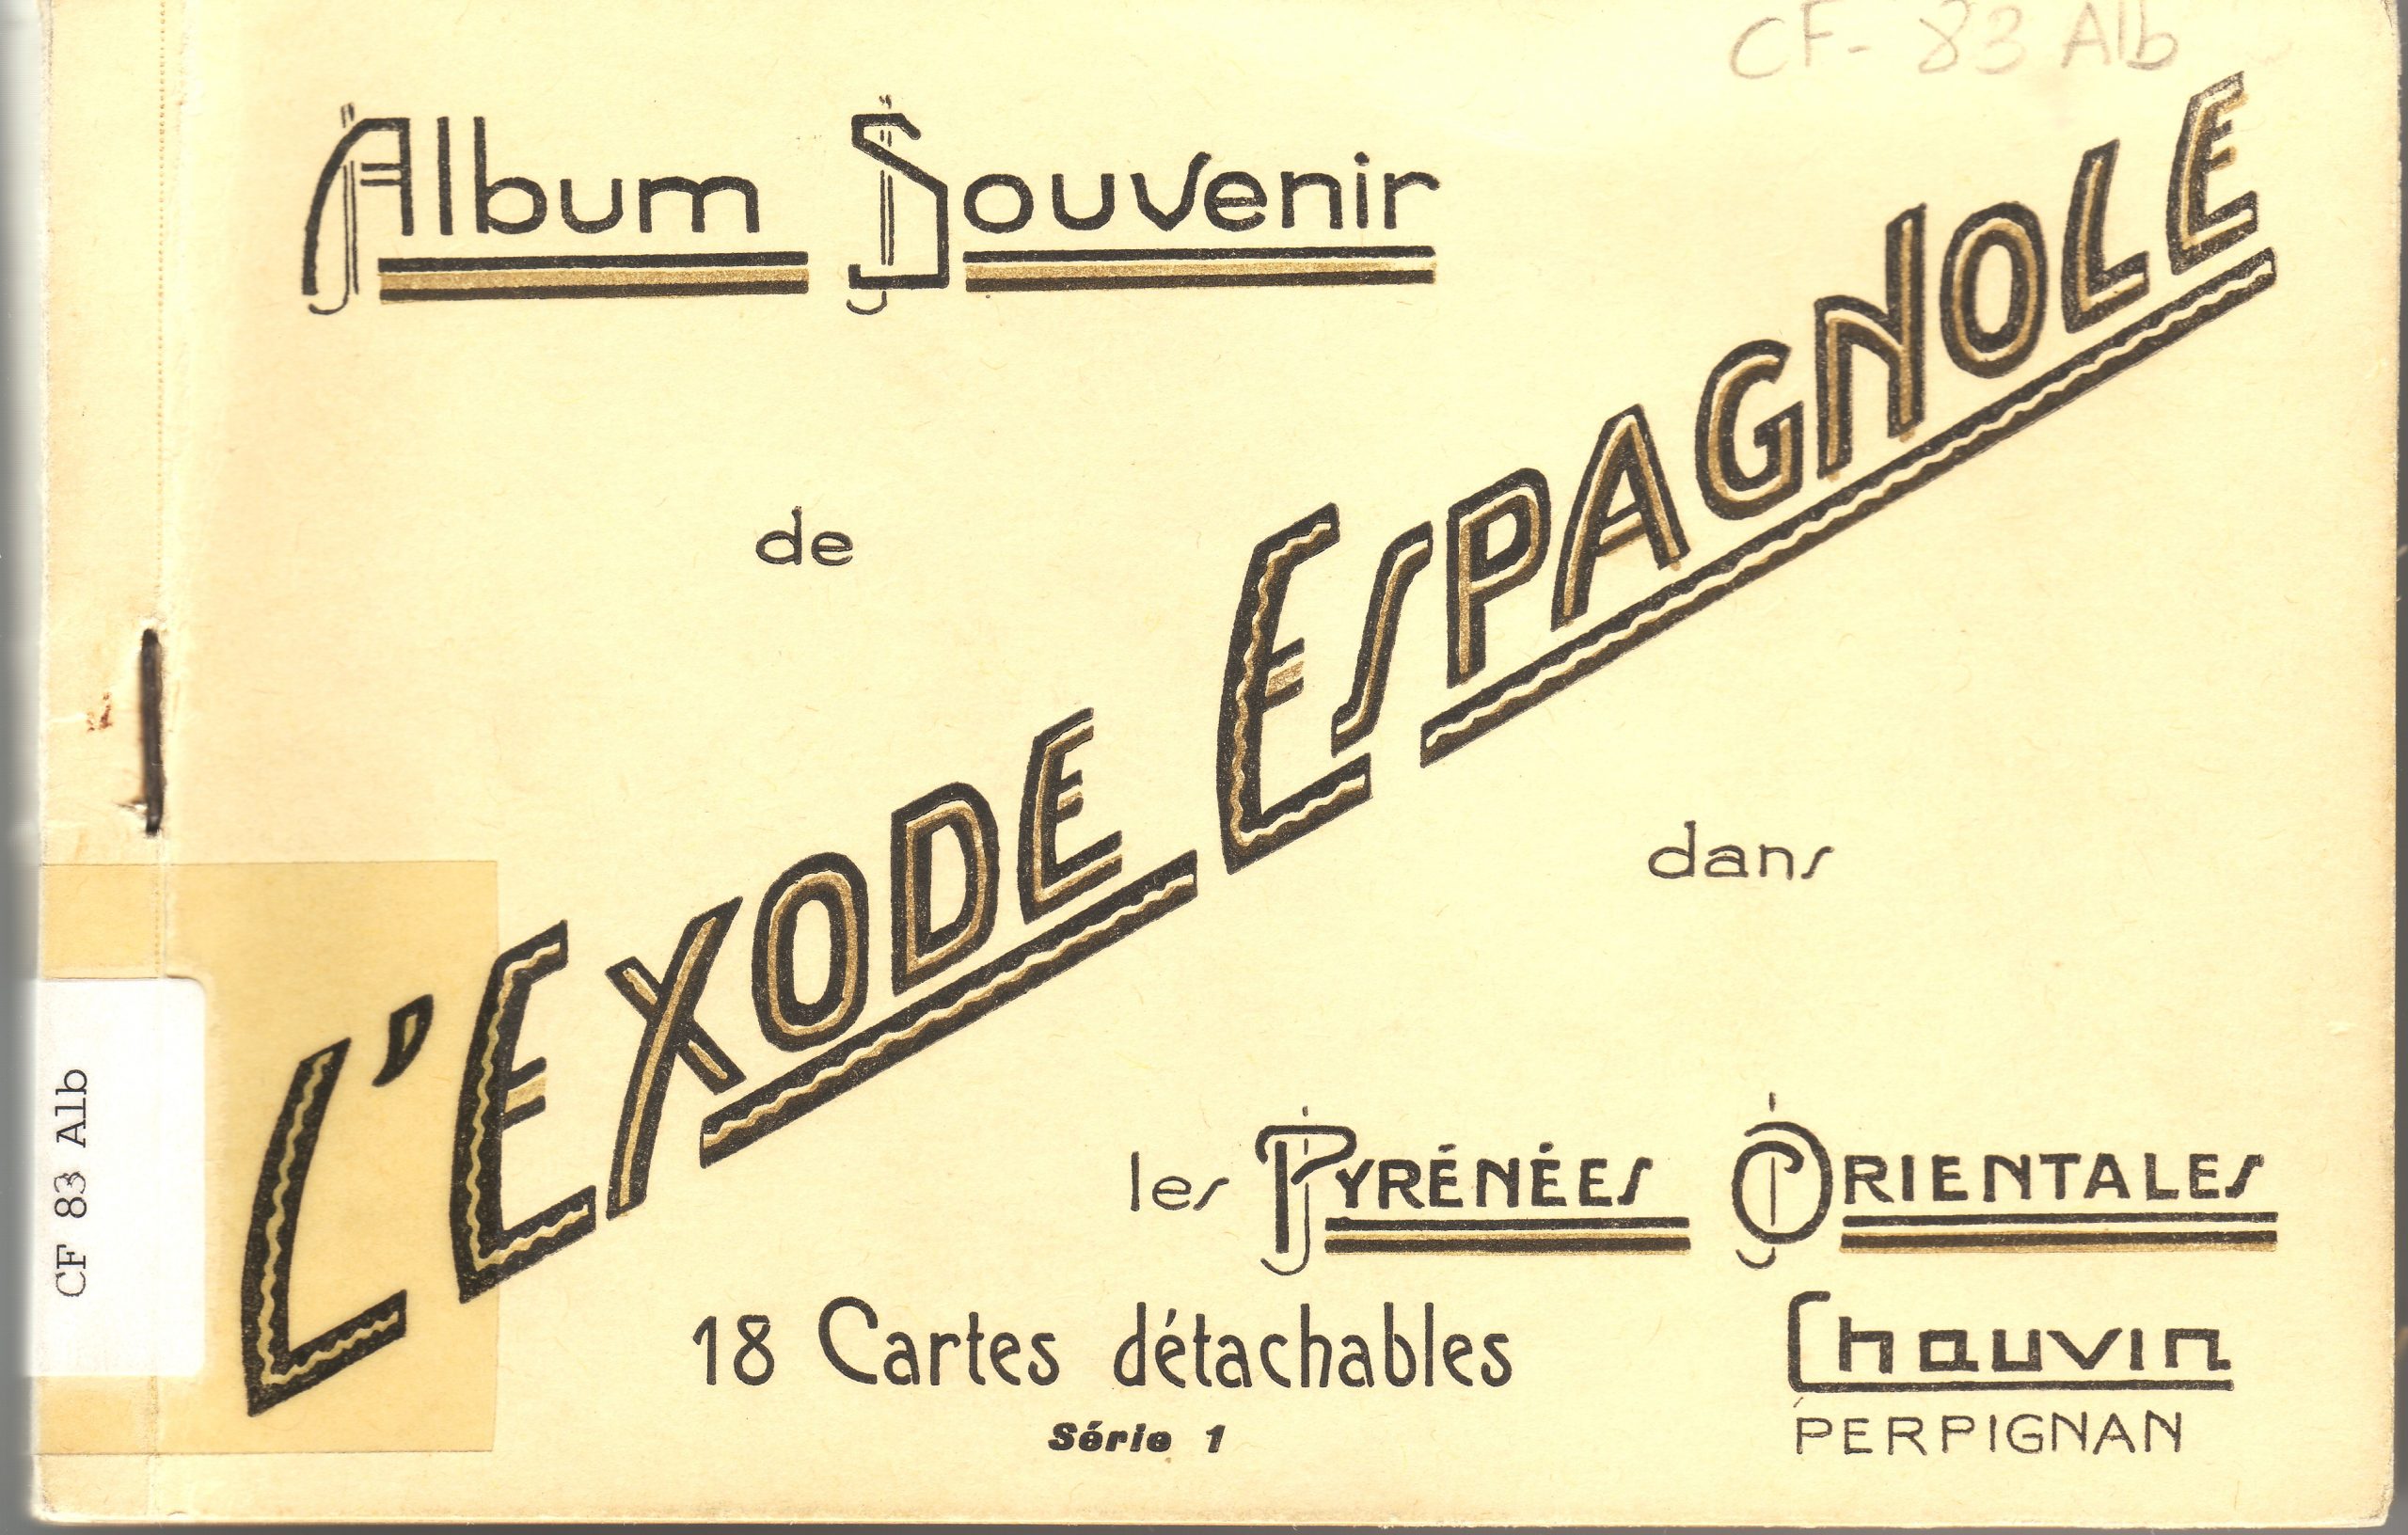 «Album souvenir de l’exode espagnole dans les Pyrénées Orientales: 18 cartes détachables»